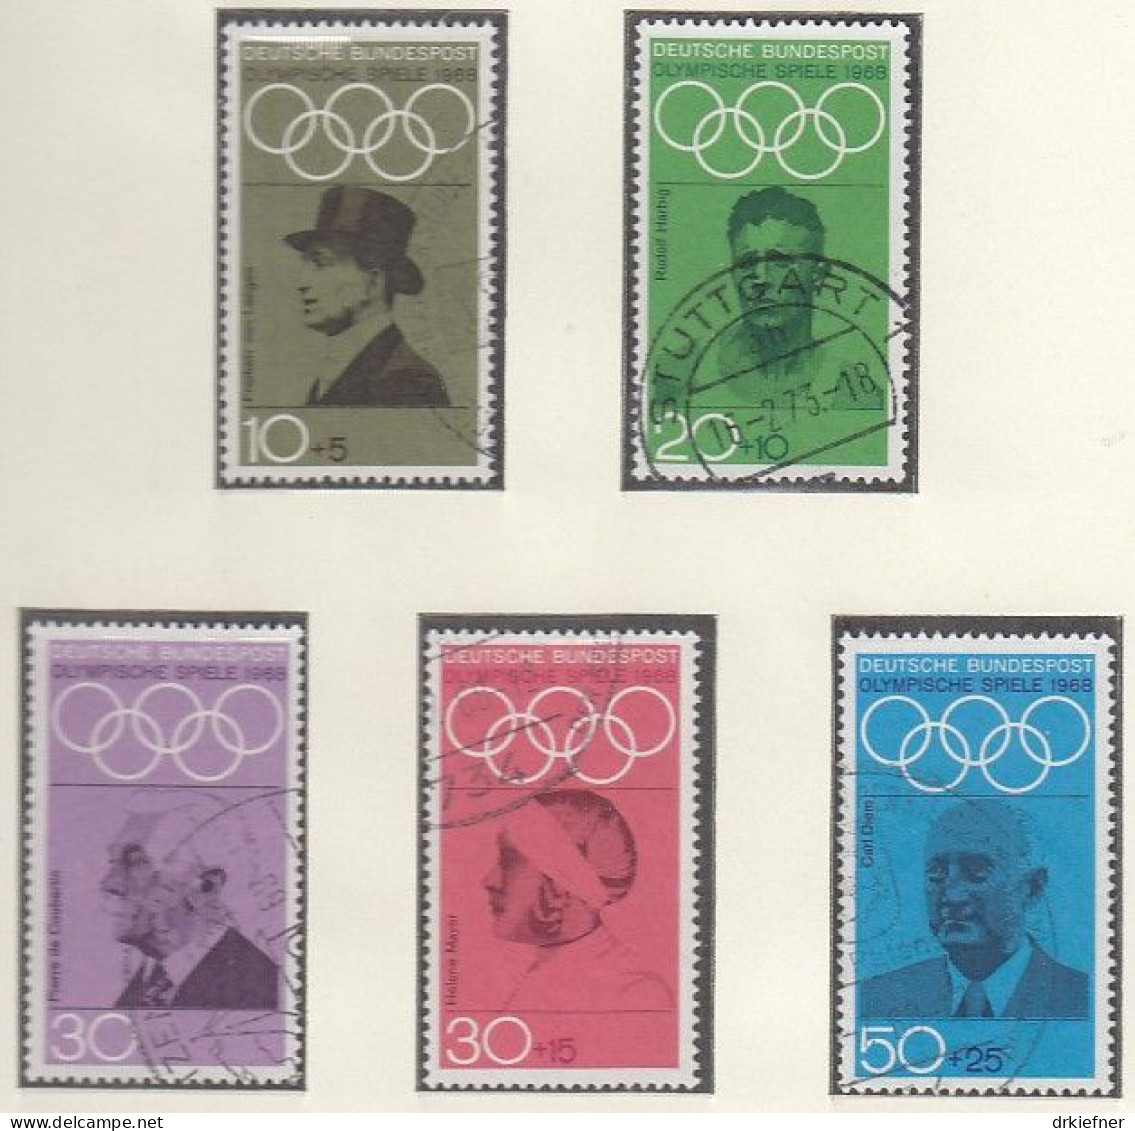 BRD  561-565, Gestempelt, Olympische Spiele München 1972, 1968 - Usati